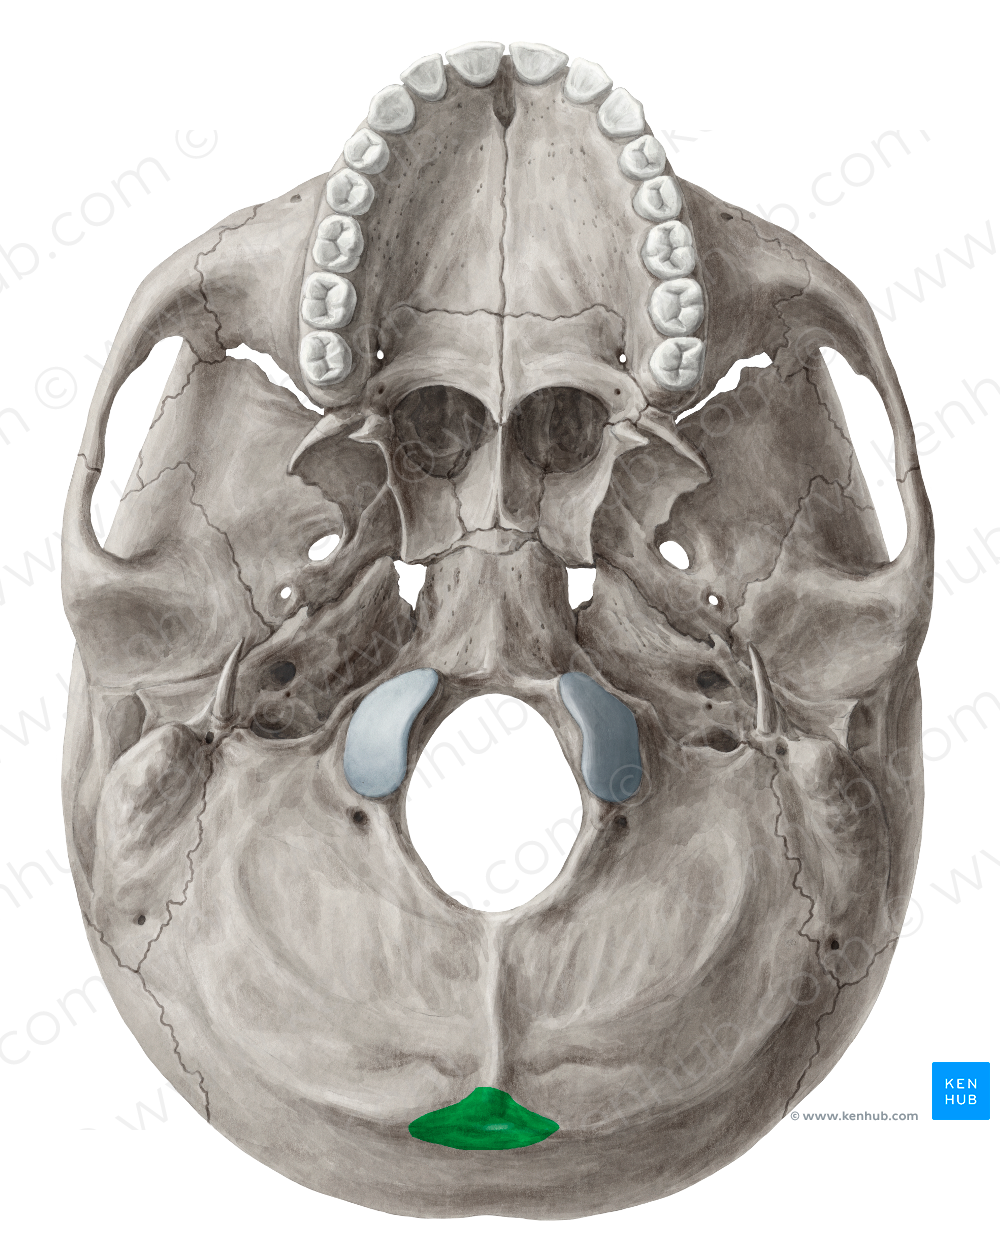 External occipital protuberance (#8388)